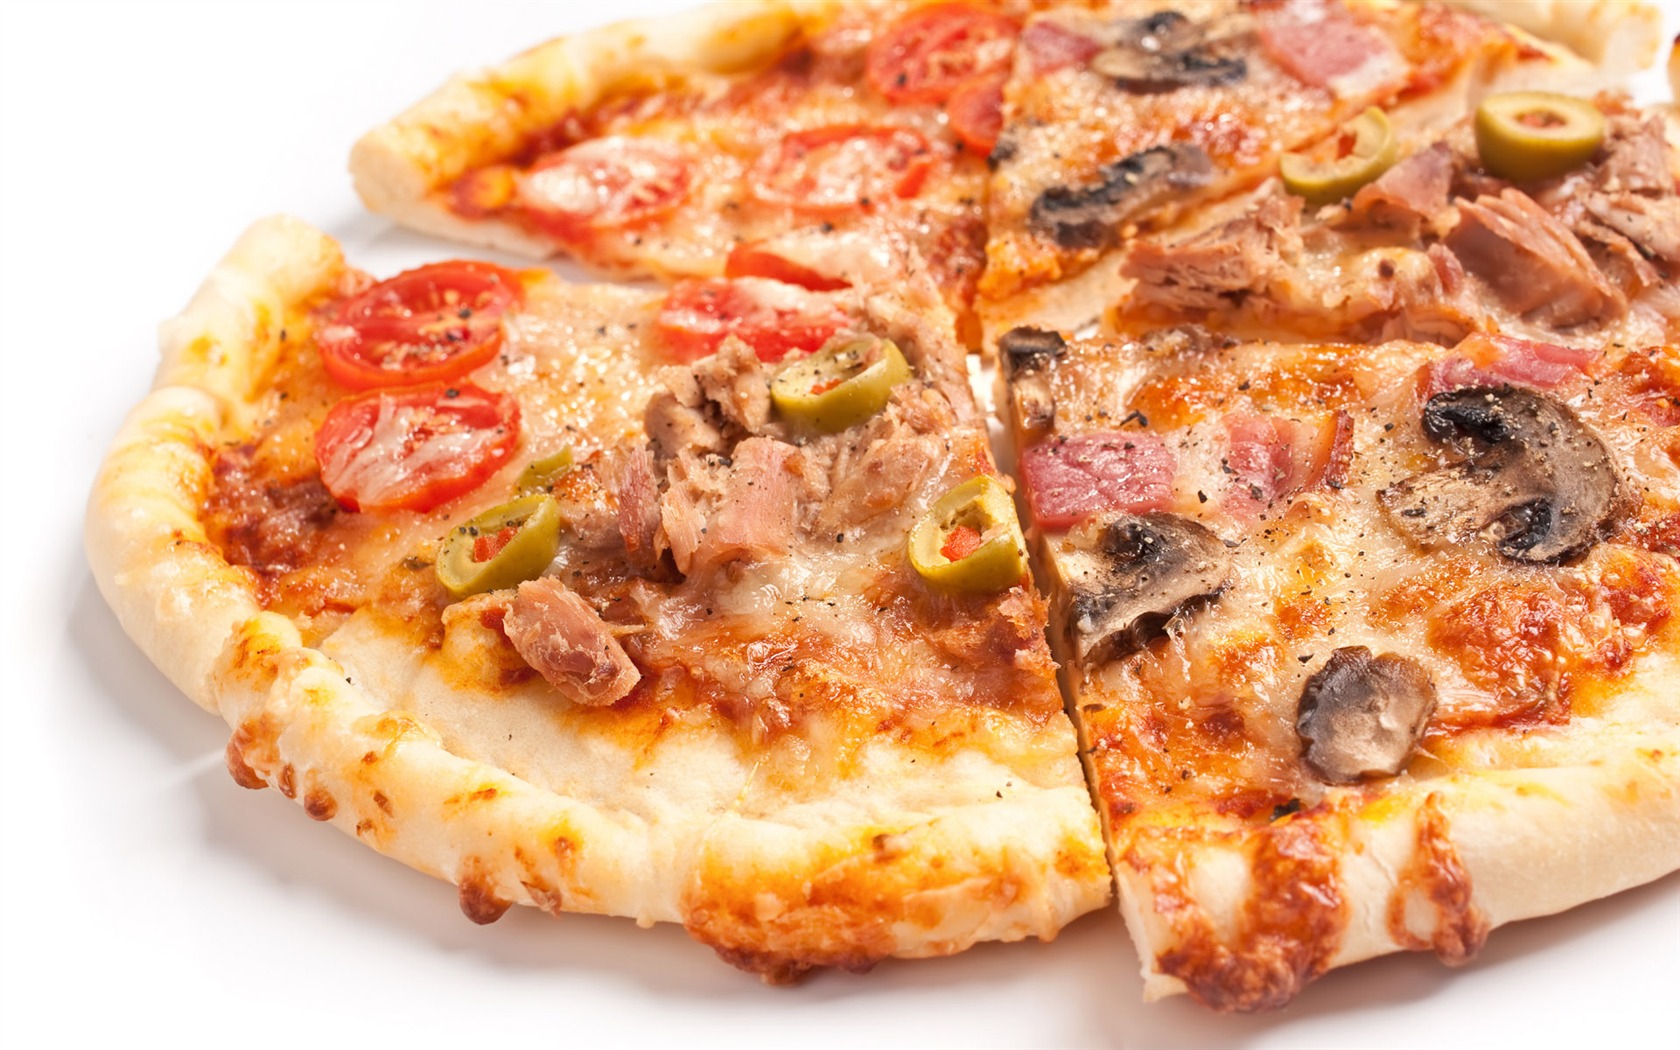 Fondos de pizzerías de Alimentos (3) #8 - 1680x1050